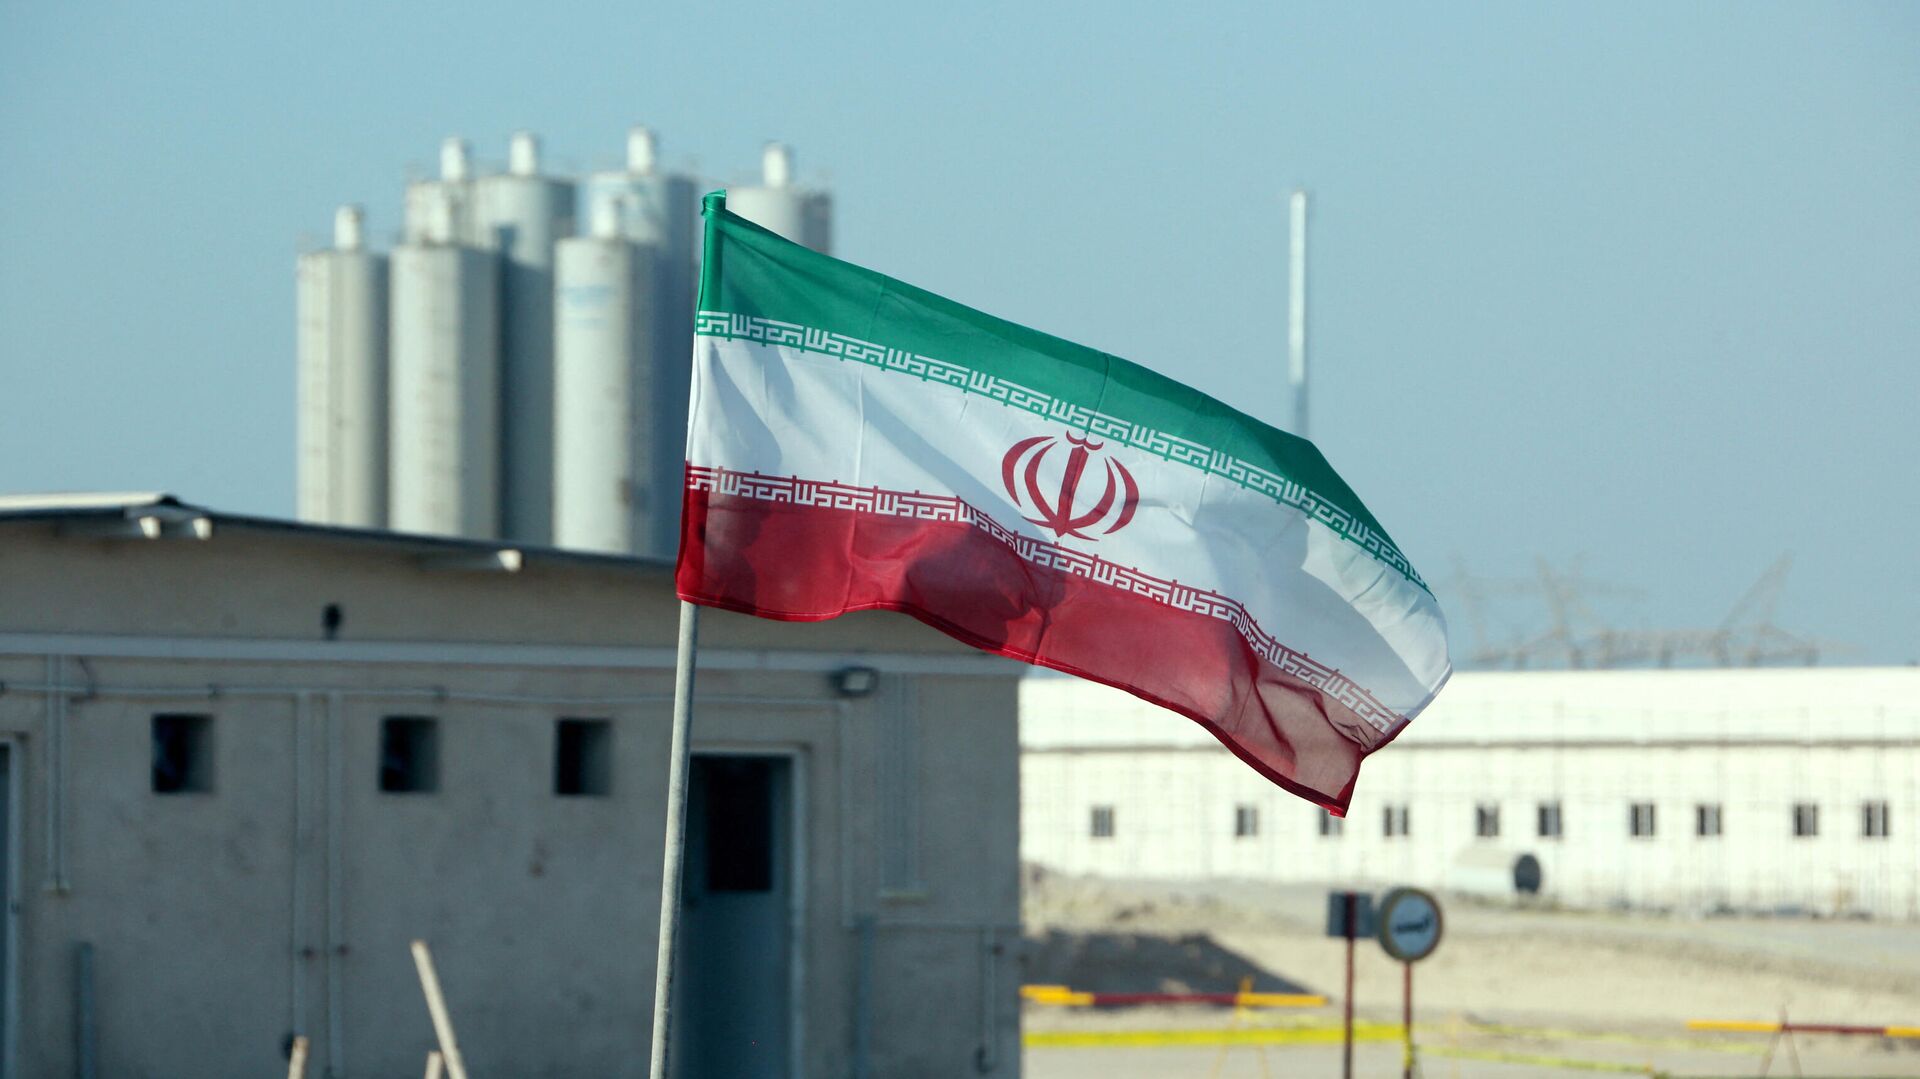 La bandera de Irán frente a una planta nuclear (archivo) - Sputnik Mundo, 1920, 13.12.2021